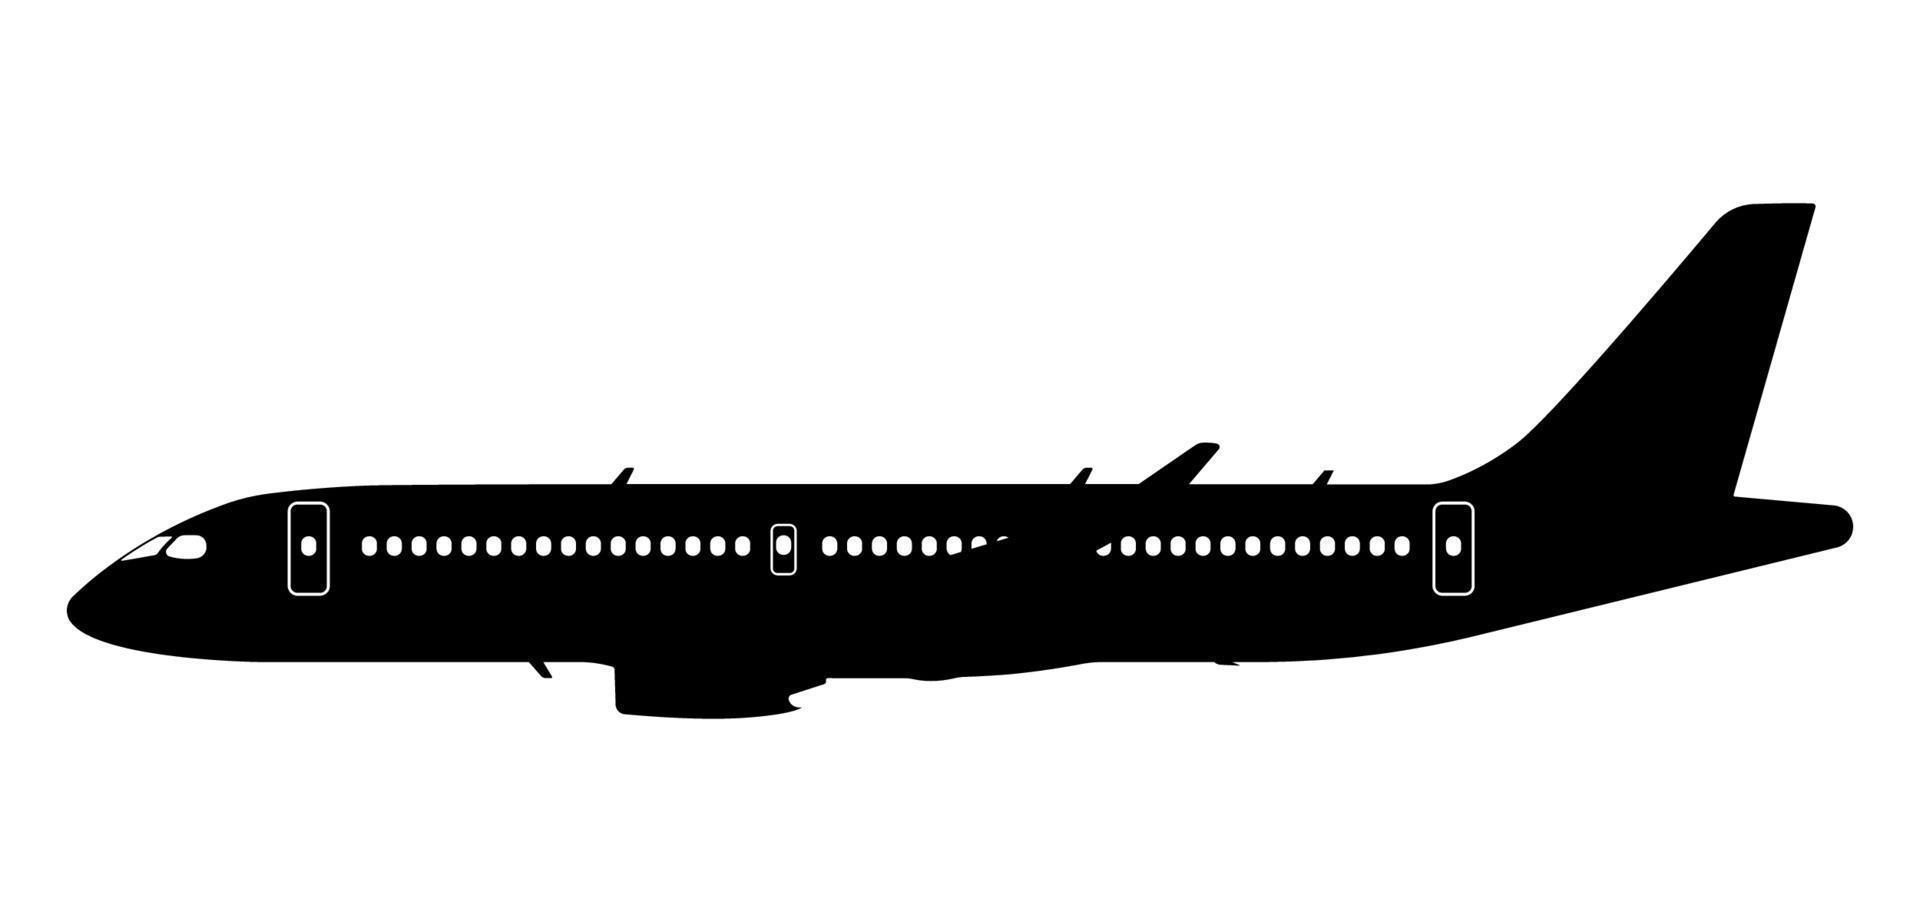 silueta de avión volador, ilustración de avión de cuerpo ancho civil. vector